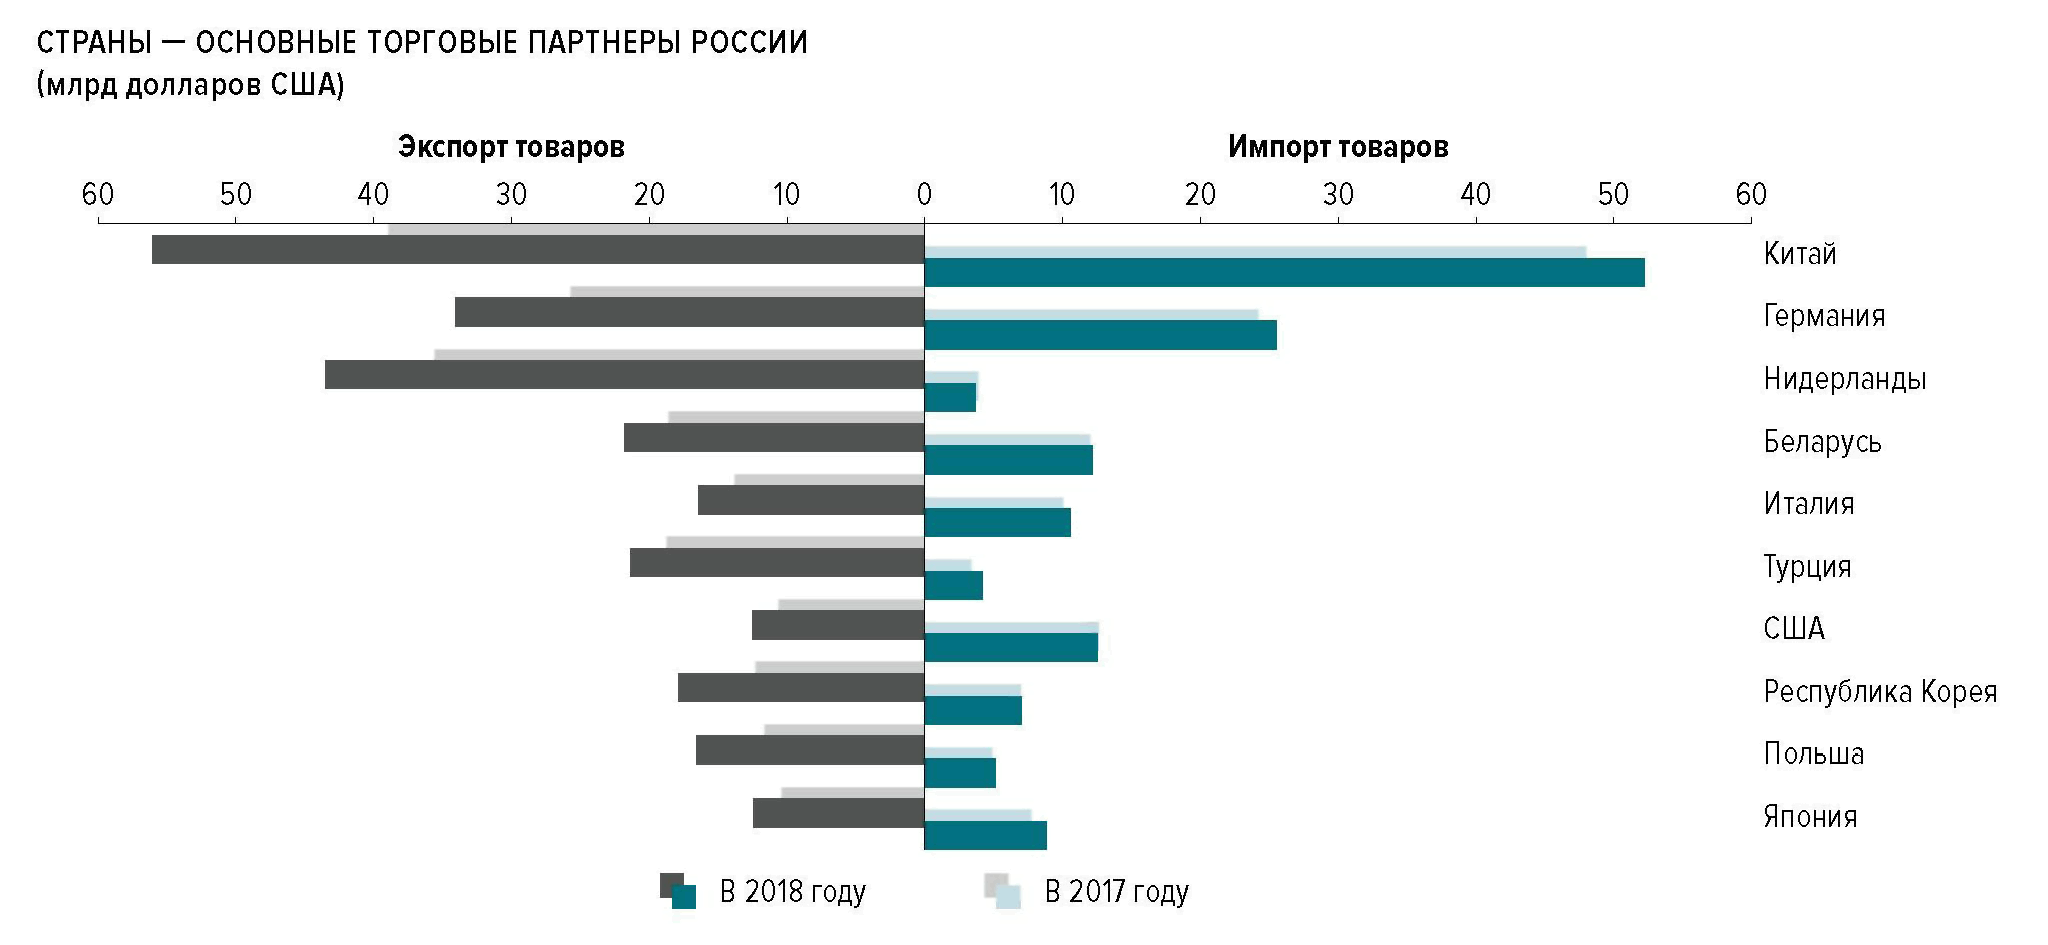 Крупнейшие торговые партнеры россии